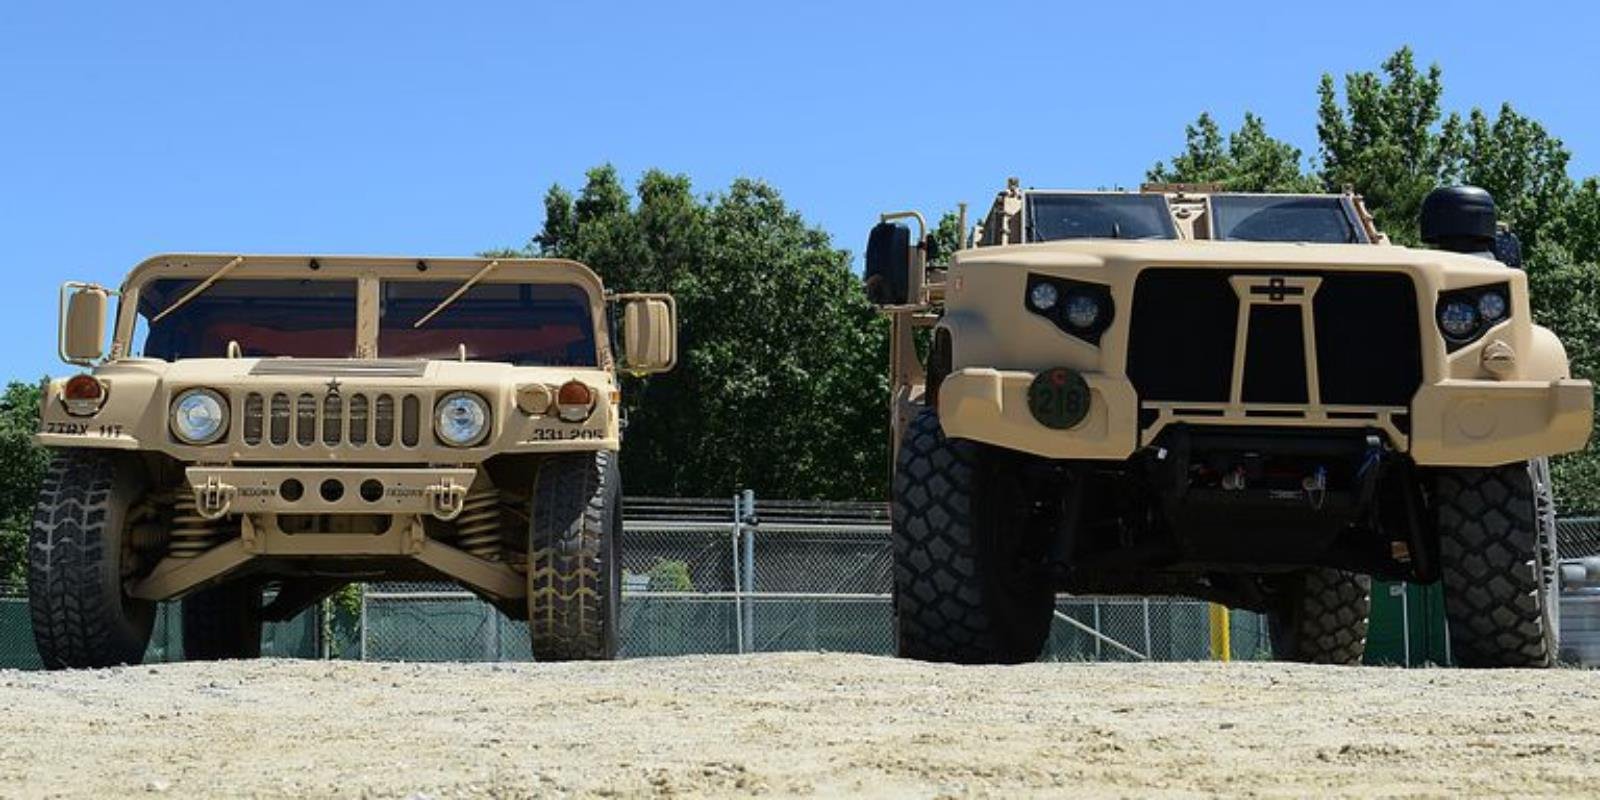 Wojskowy pojazd JLTV, eJLTV od Oshkosh Defense, Oshkosh Defense JLTV